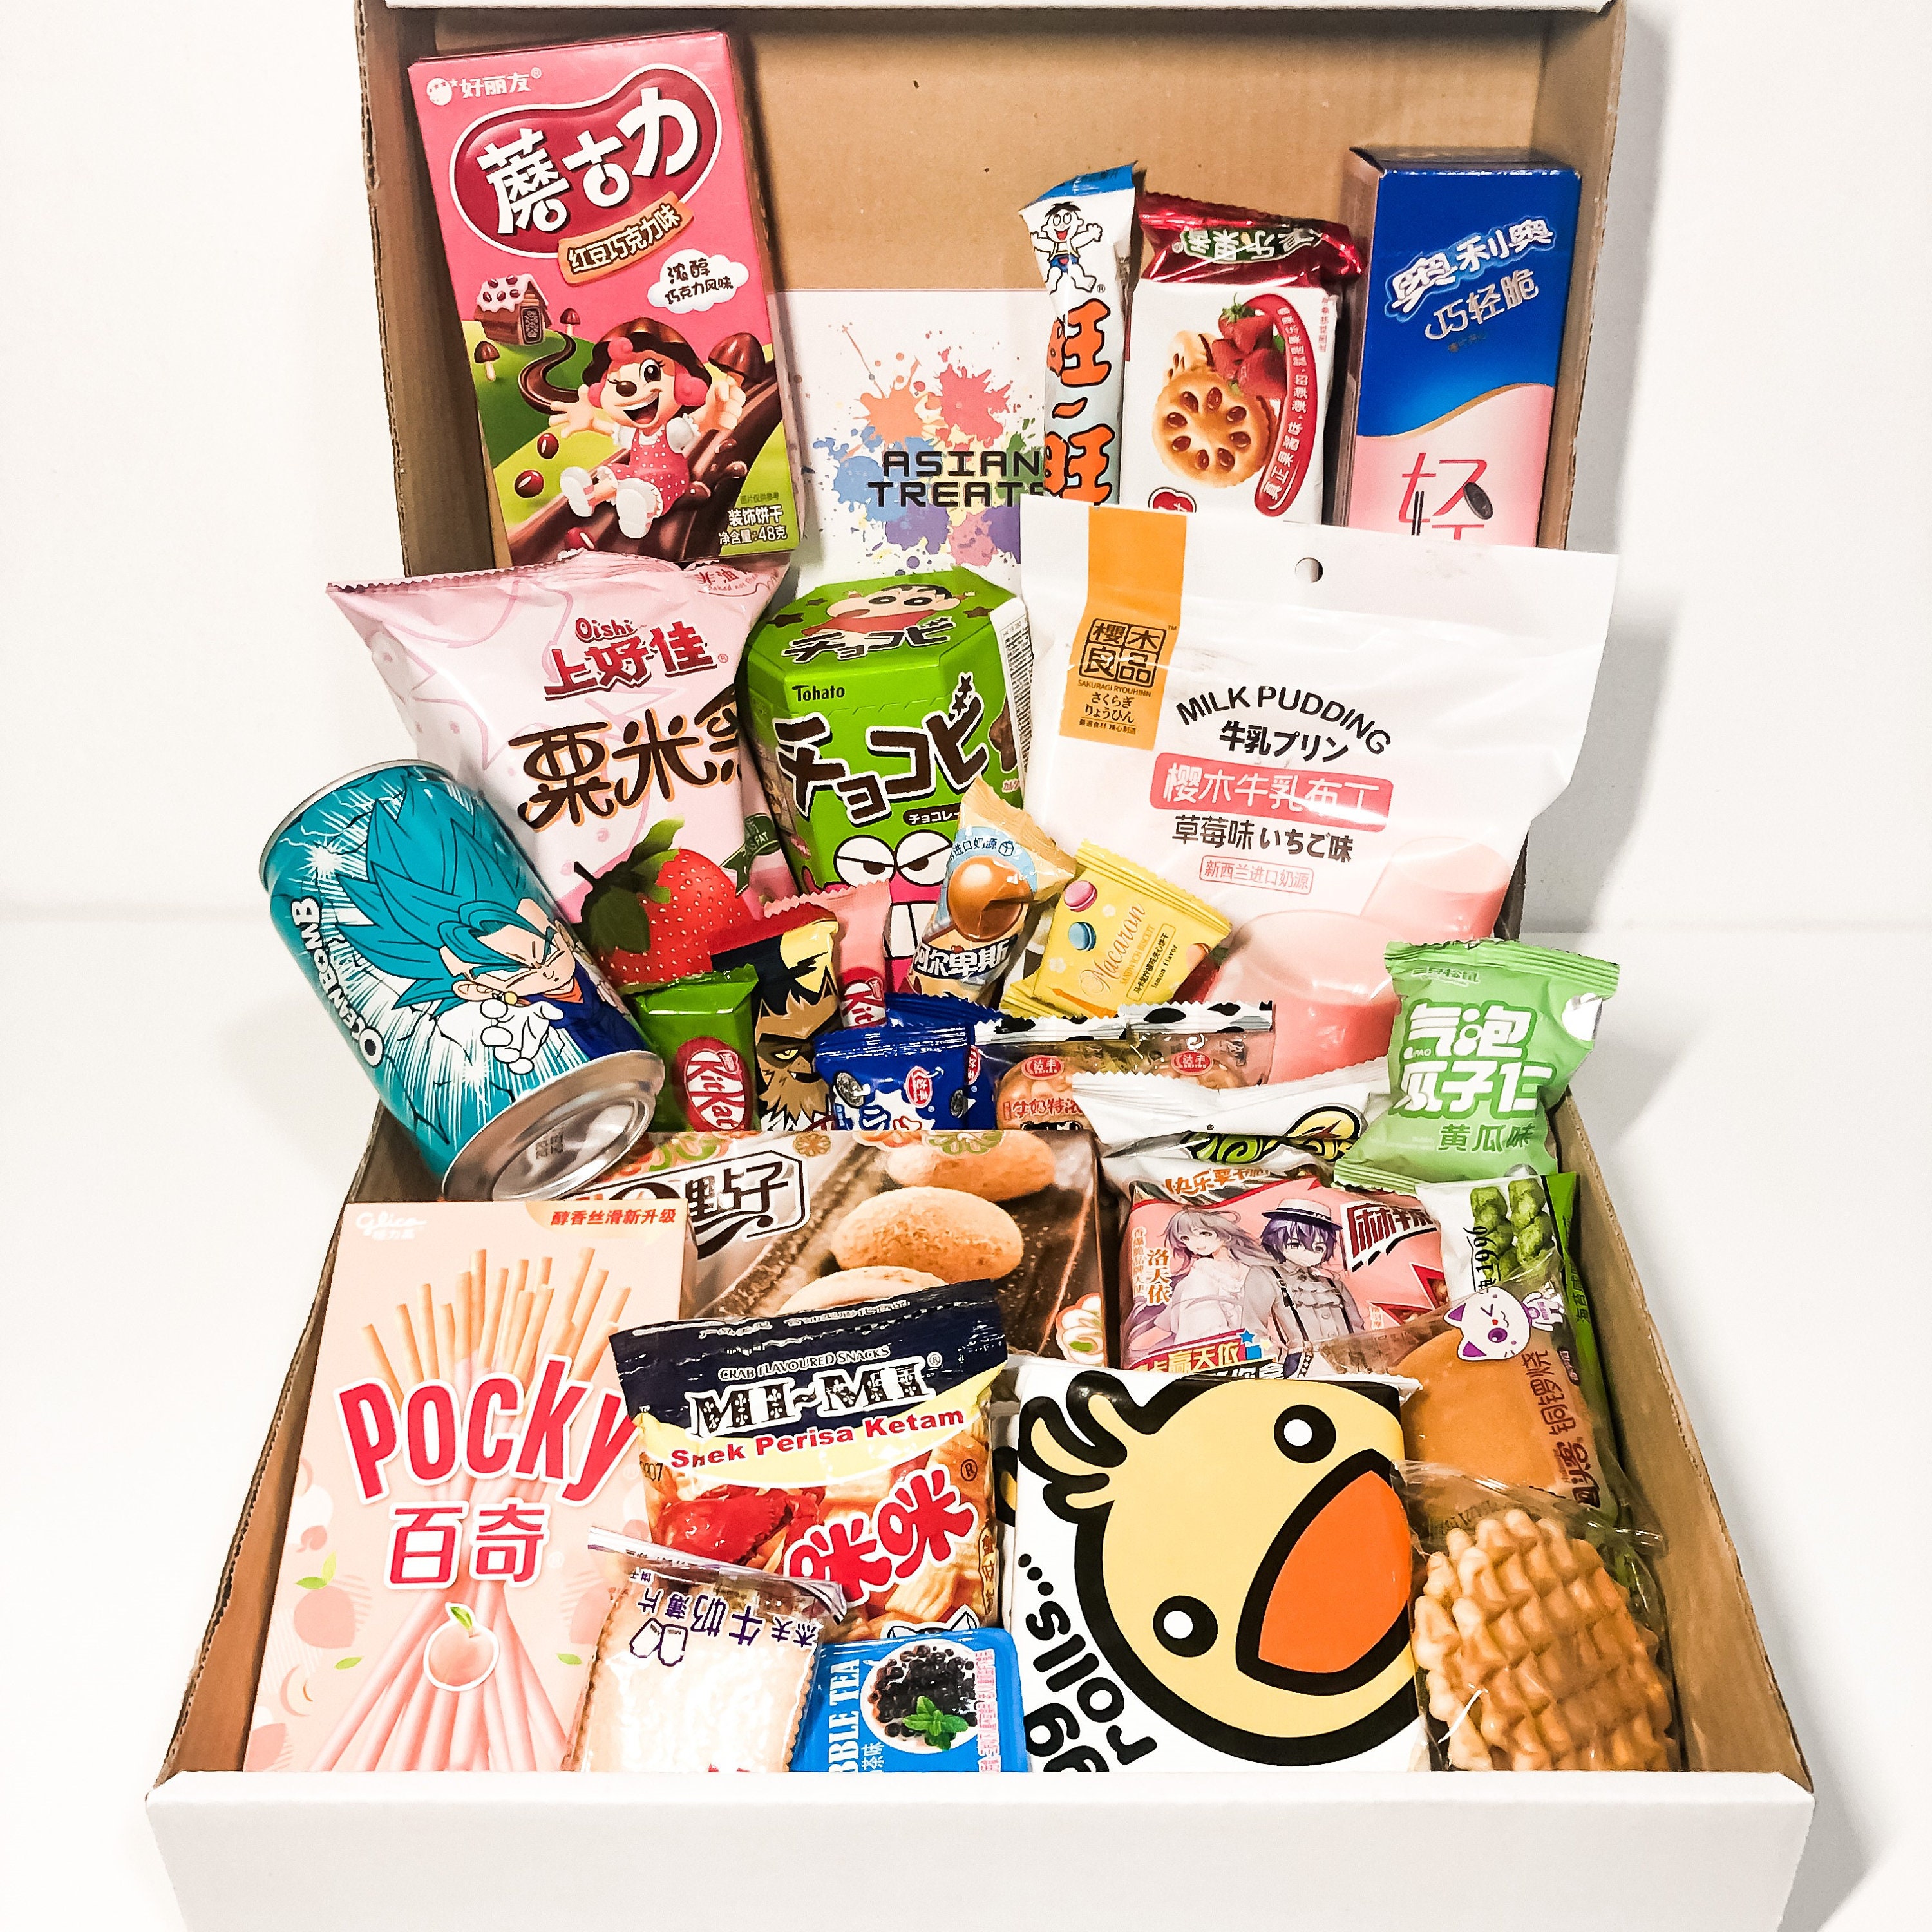 Asiantreats Box XL / Asian Snacks /snack Box /korean - Etsy Norway